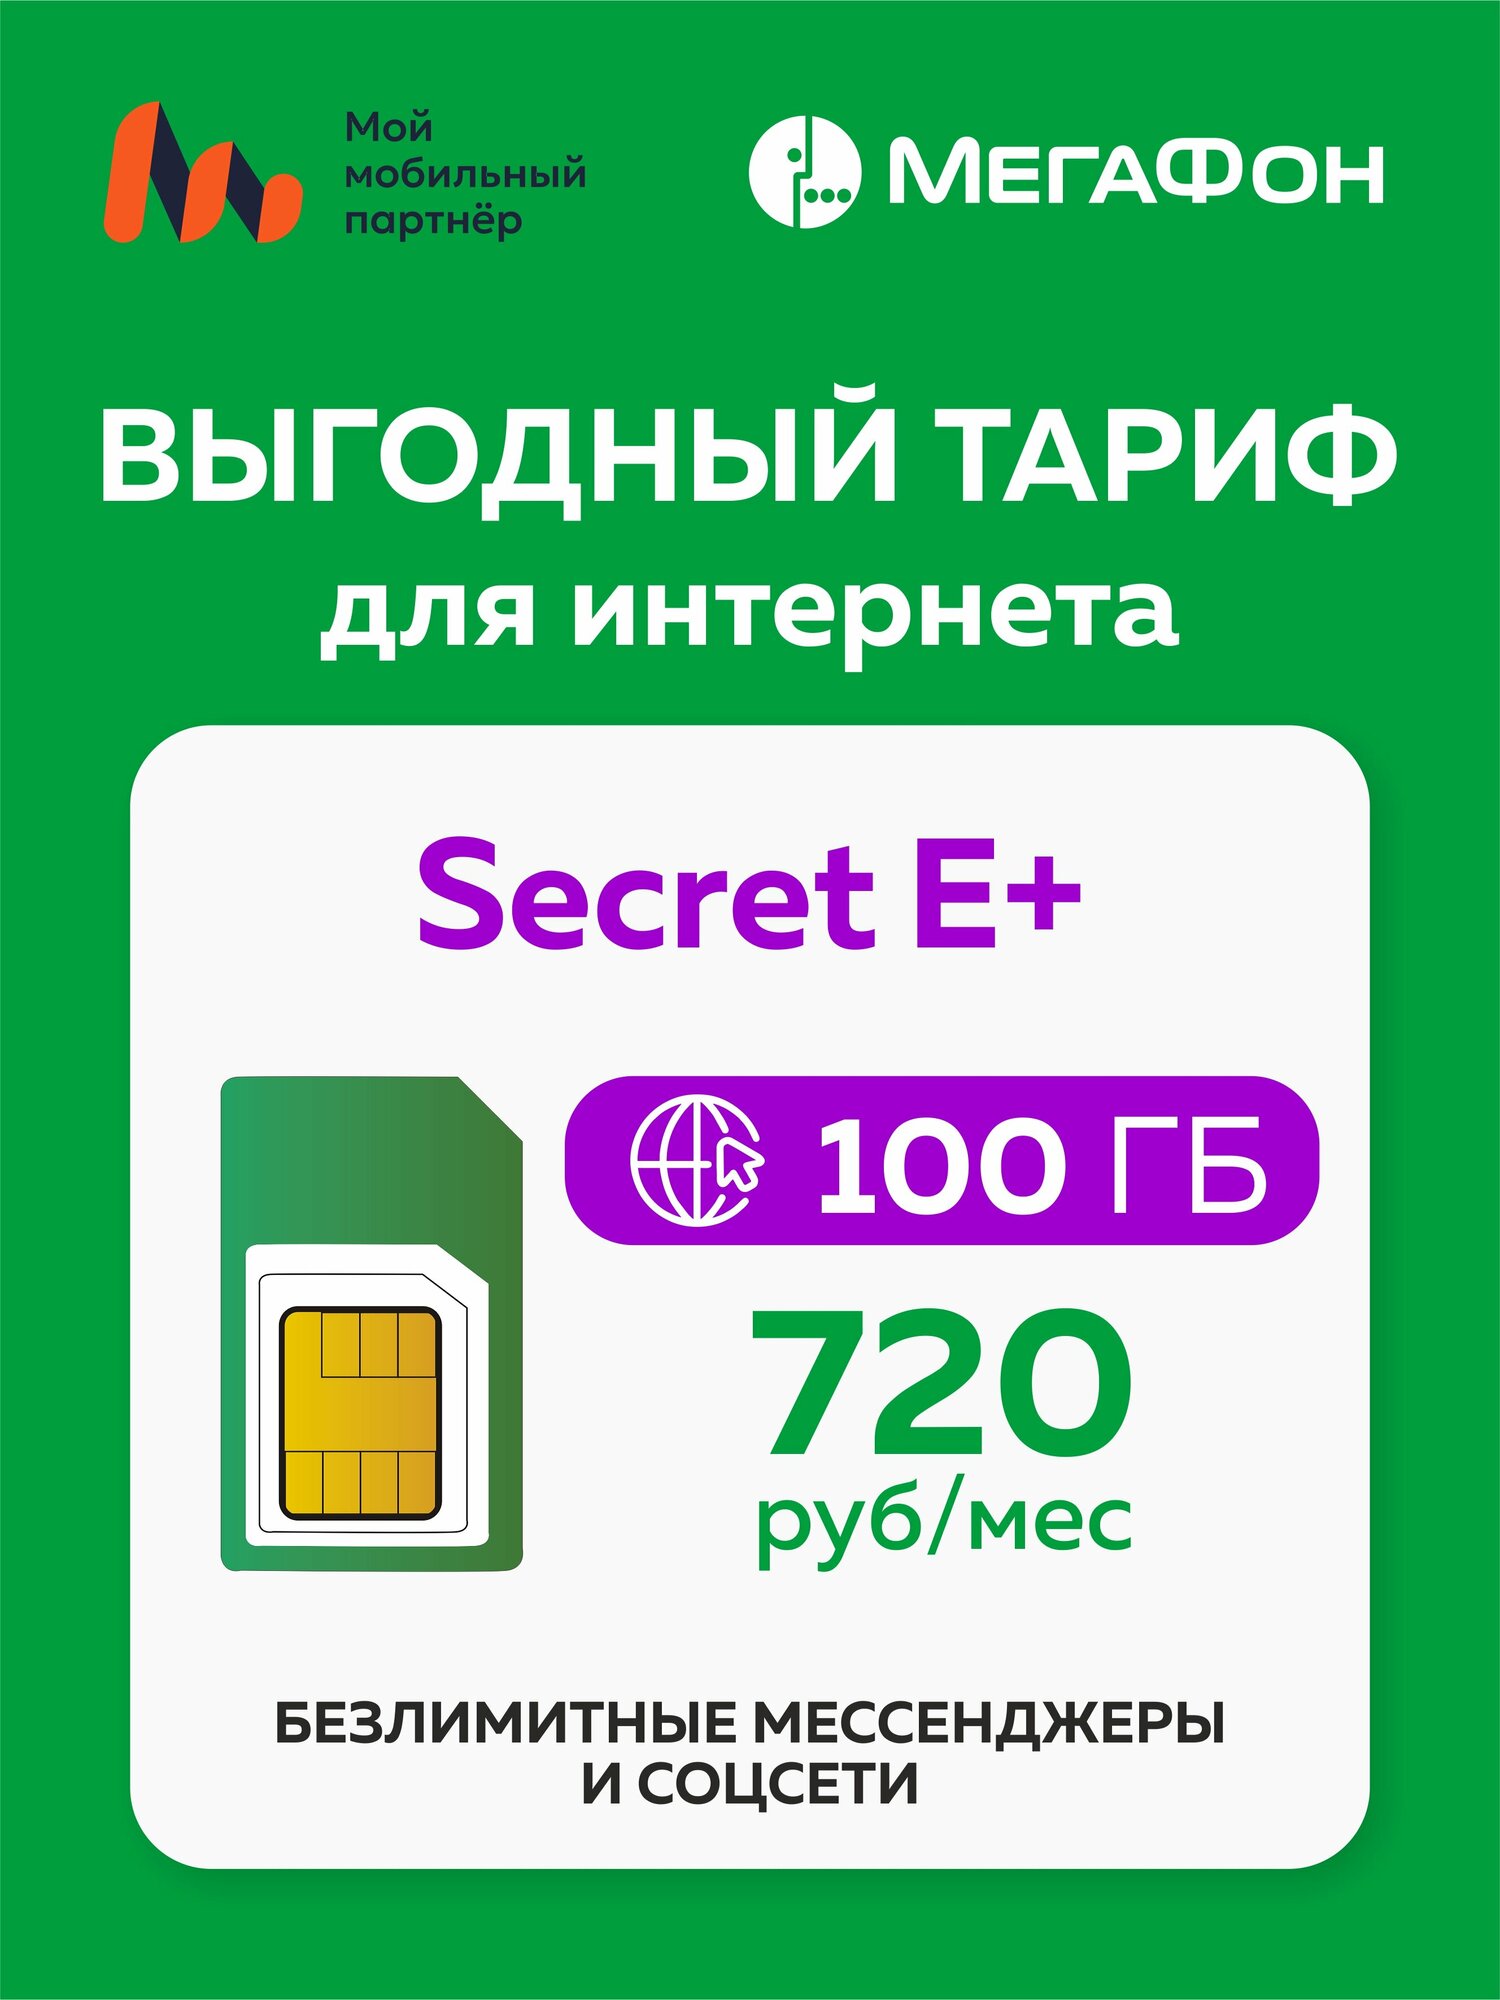 SIM-карта Secret E+